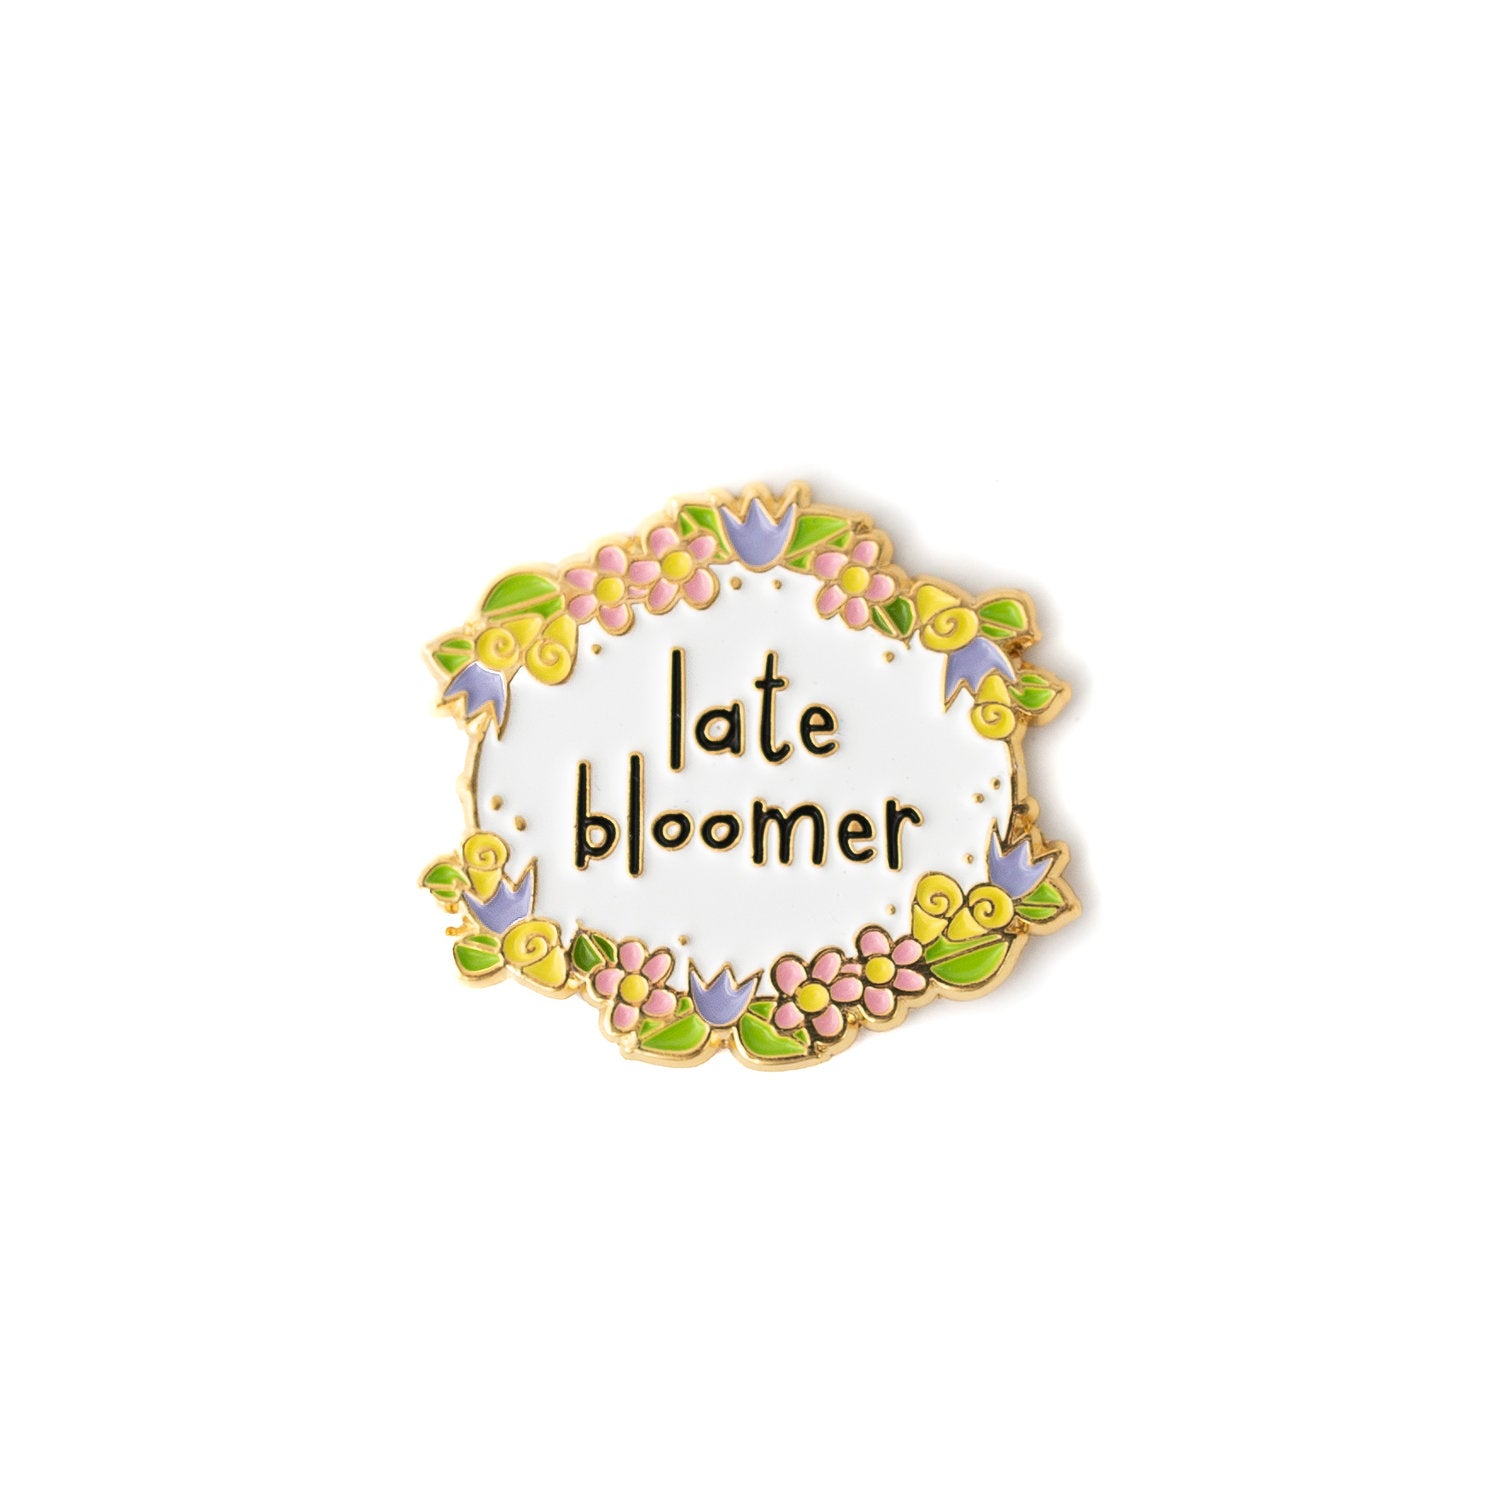 Late Bloomer enamel pin